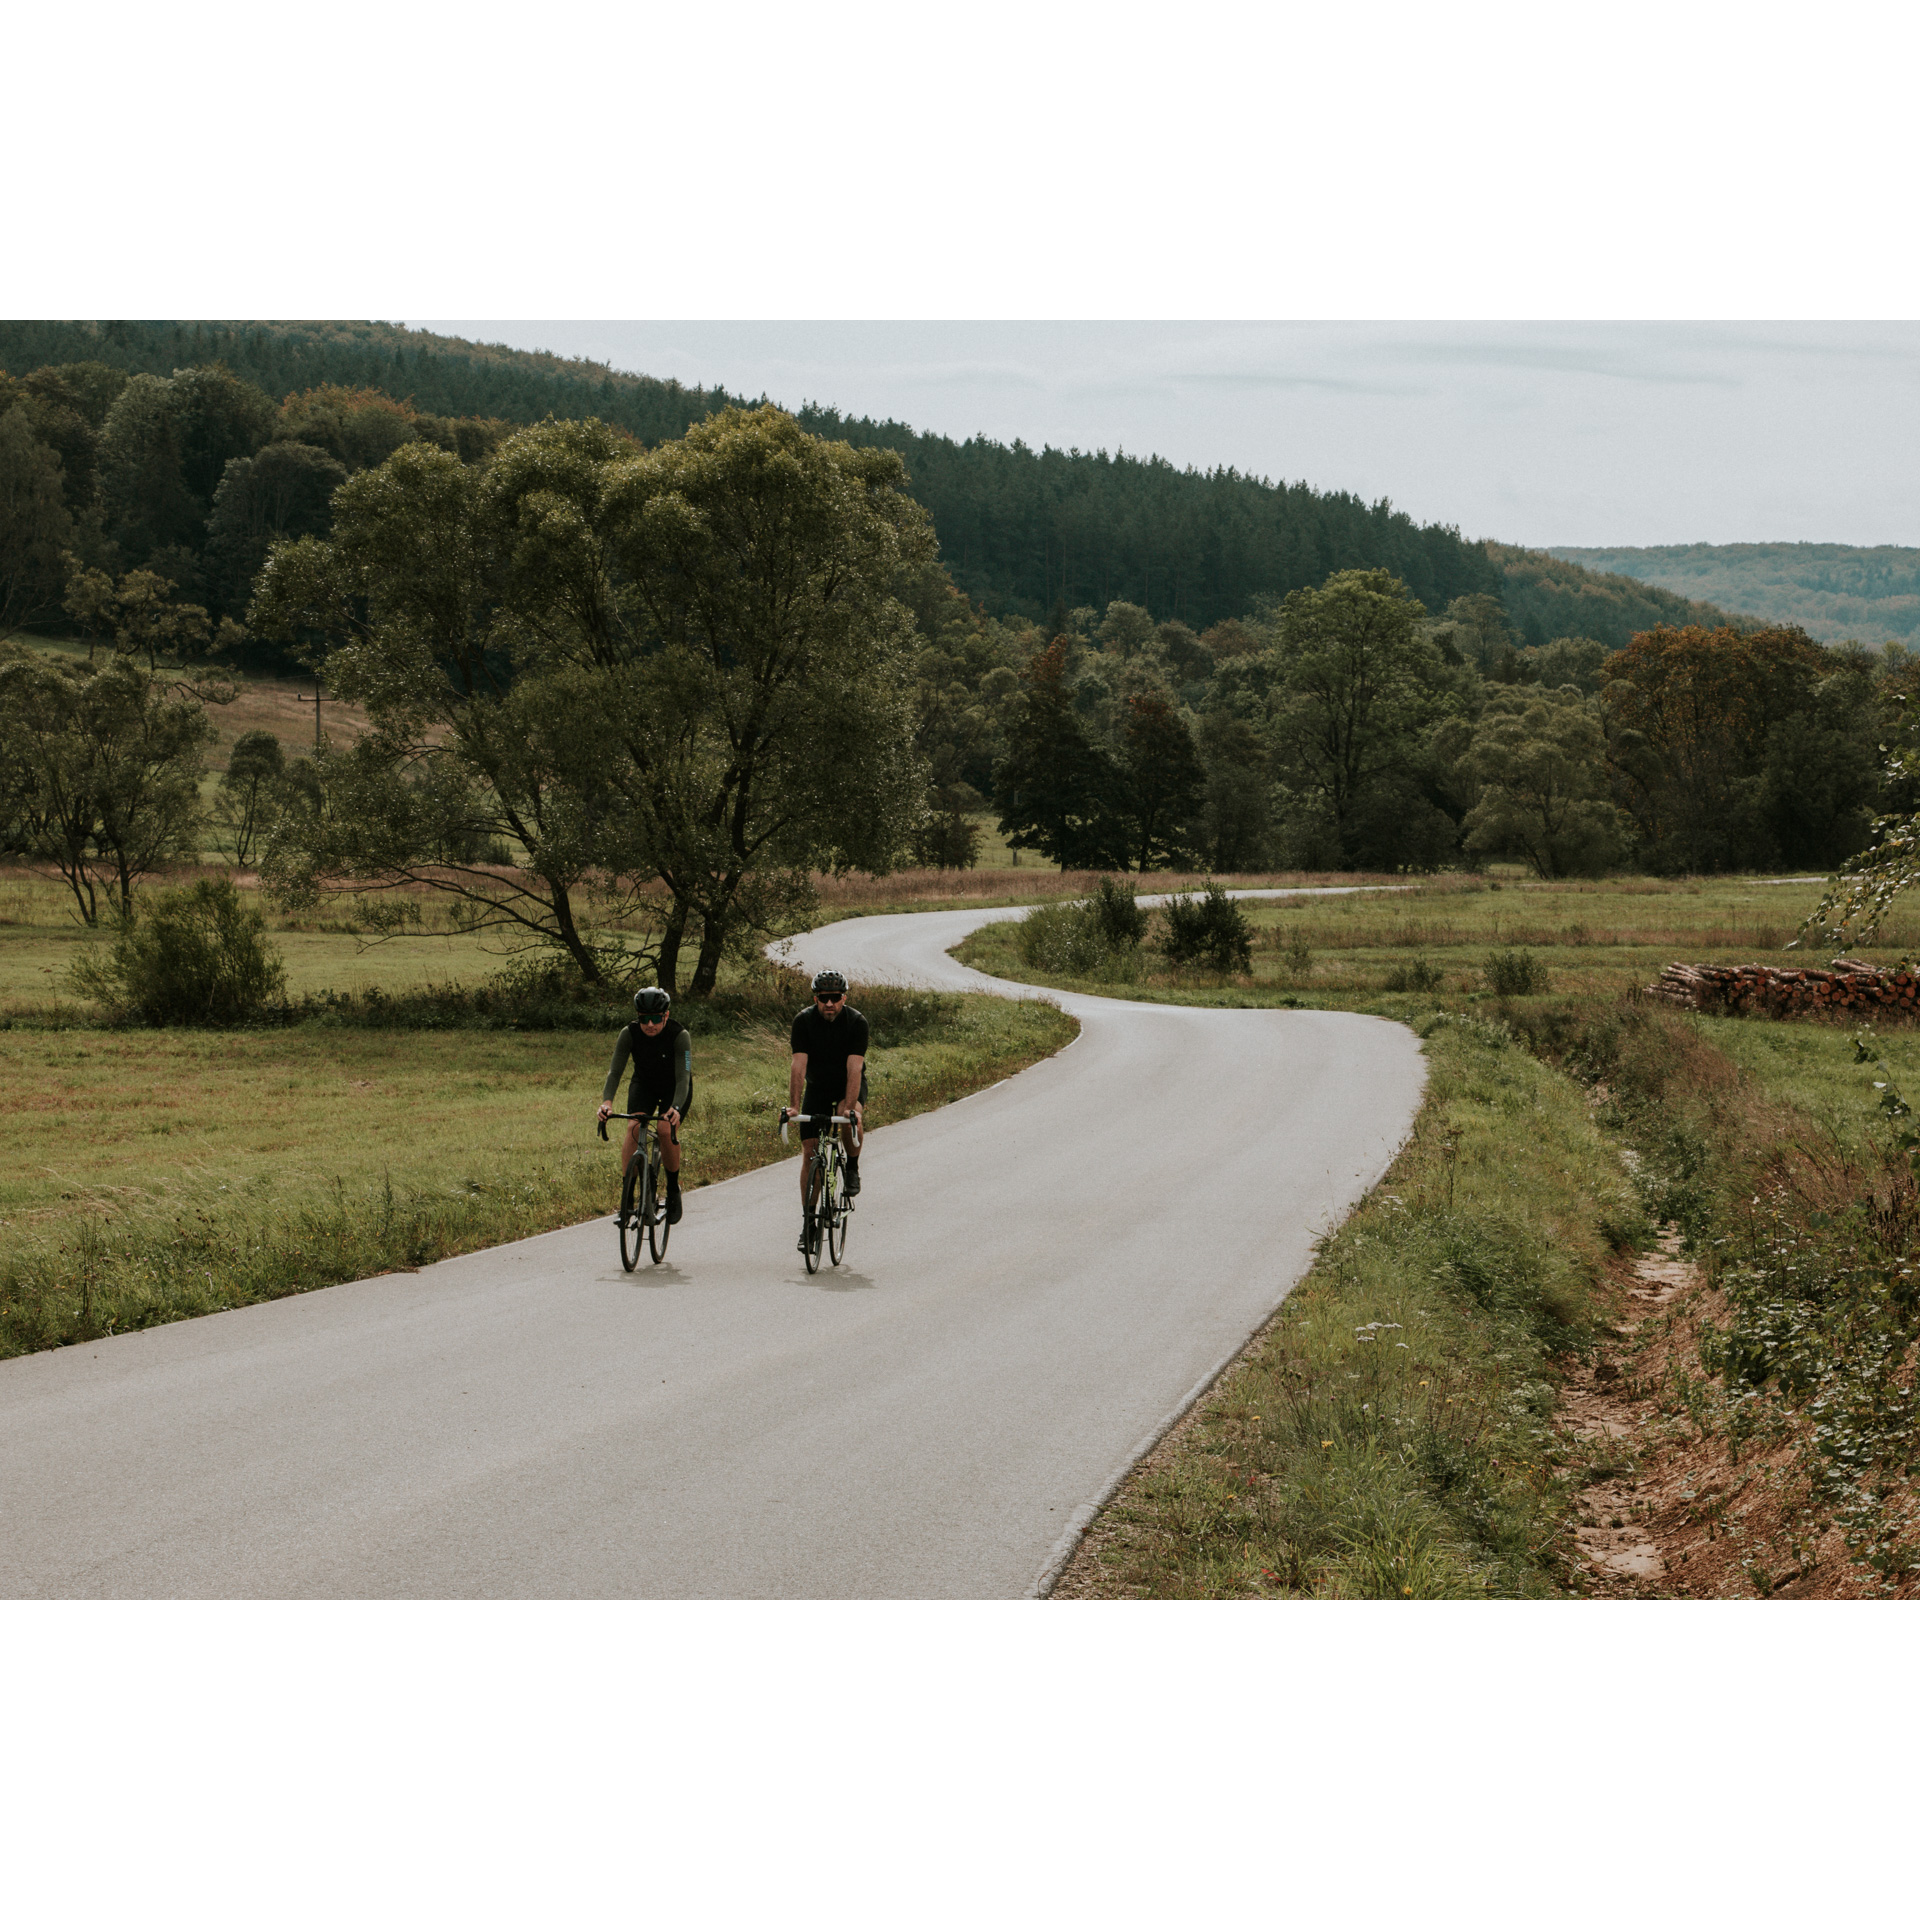 Dwóch kolarzy w czarnych strojach i kaskach jadących na rowerach asfaltową krętą drogą wśród zielonych łąk, drzew i wzgórz